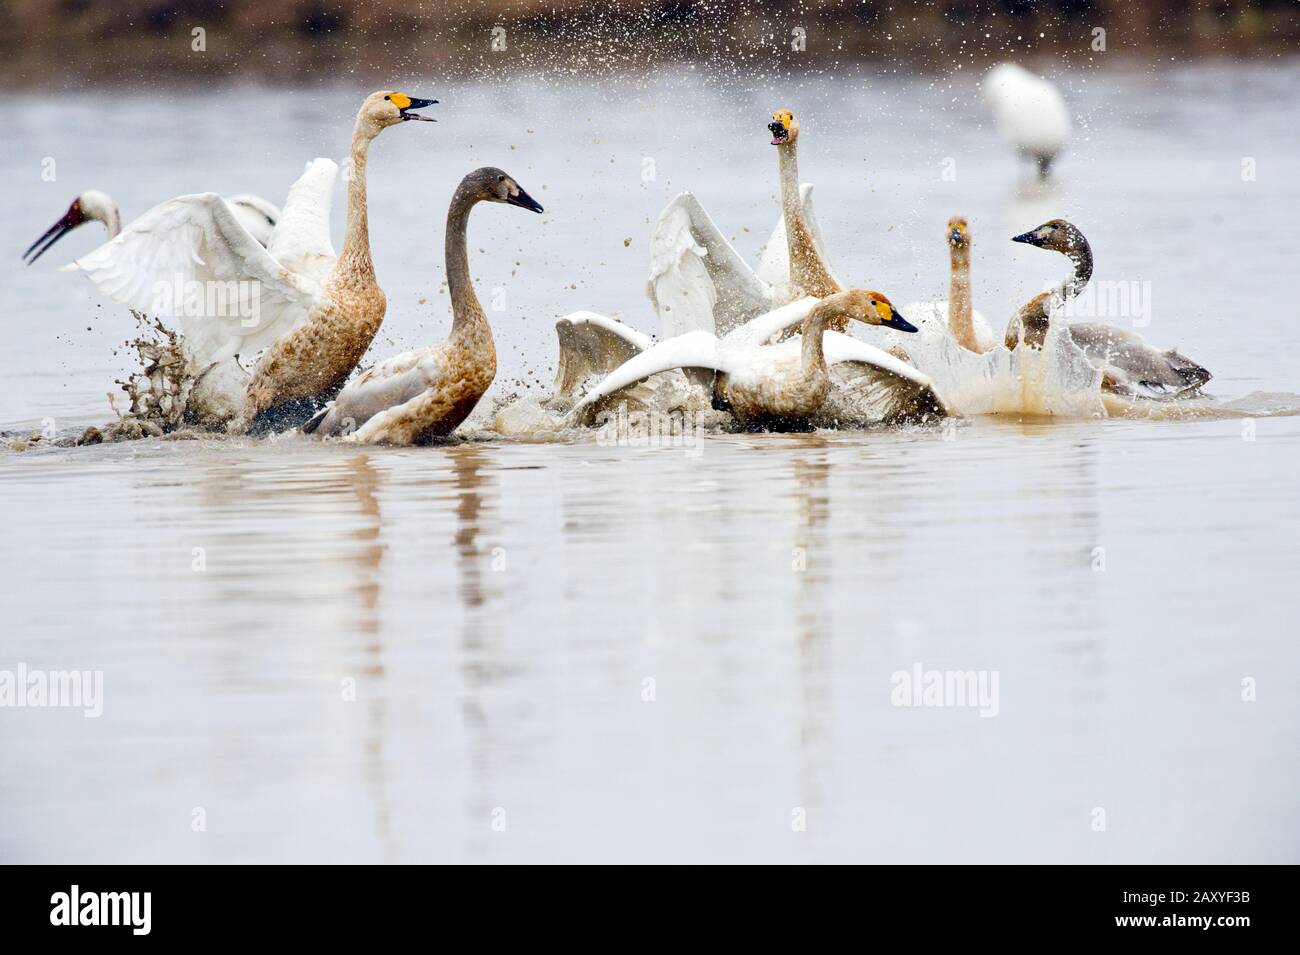 Whooper swan (Cygnus cygnus) greeting frenzy at Wuxing Farm, Wuxing Nonchang, Poyang Lake Basin, east-central China Stock Photo